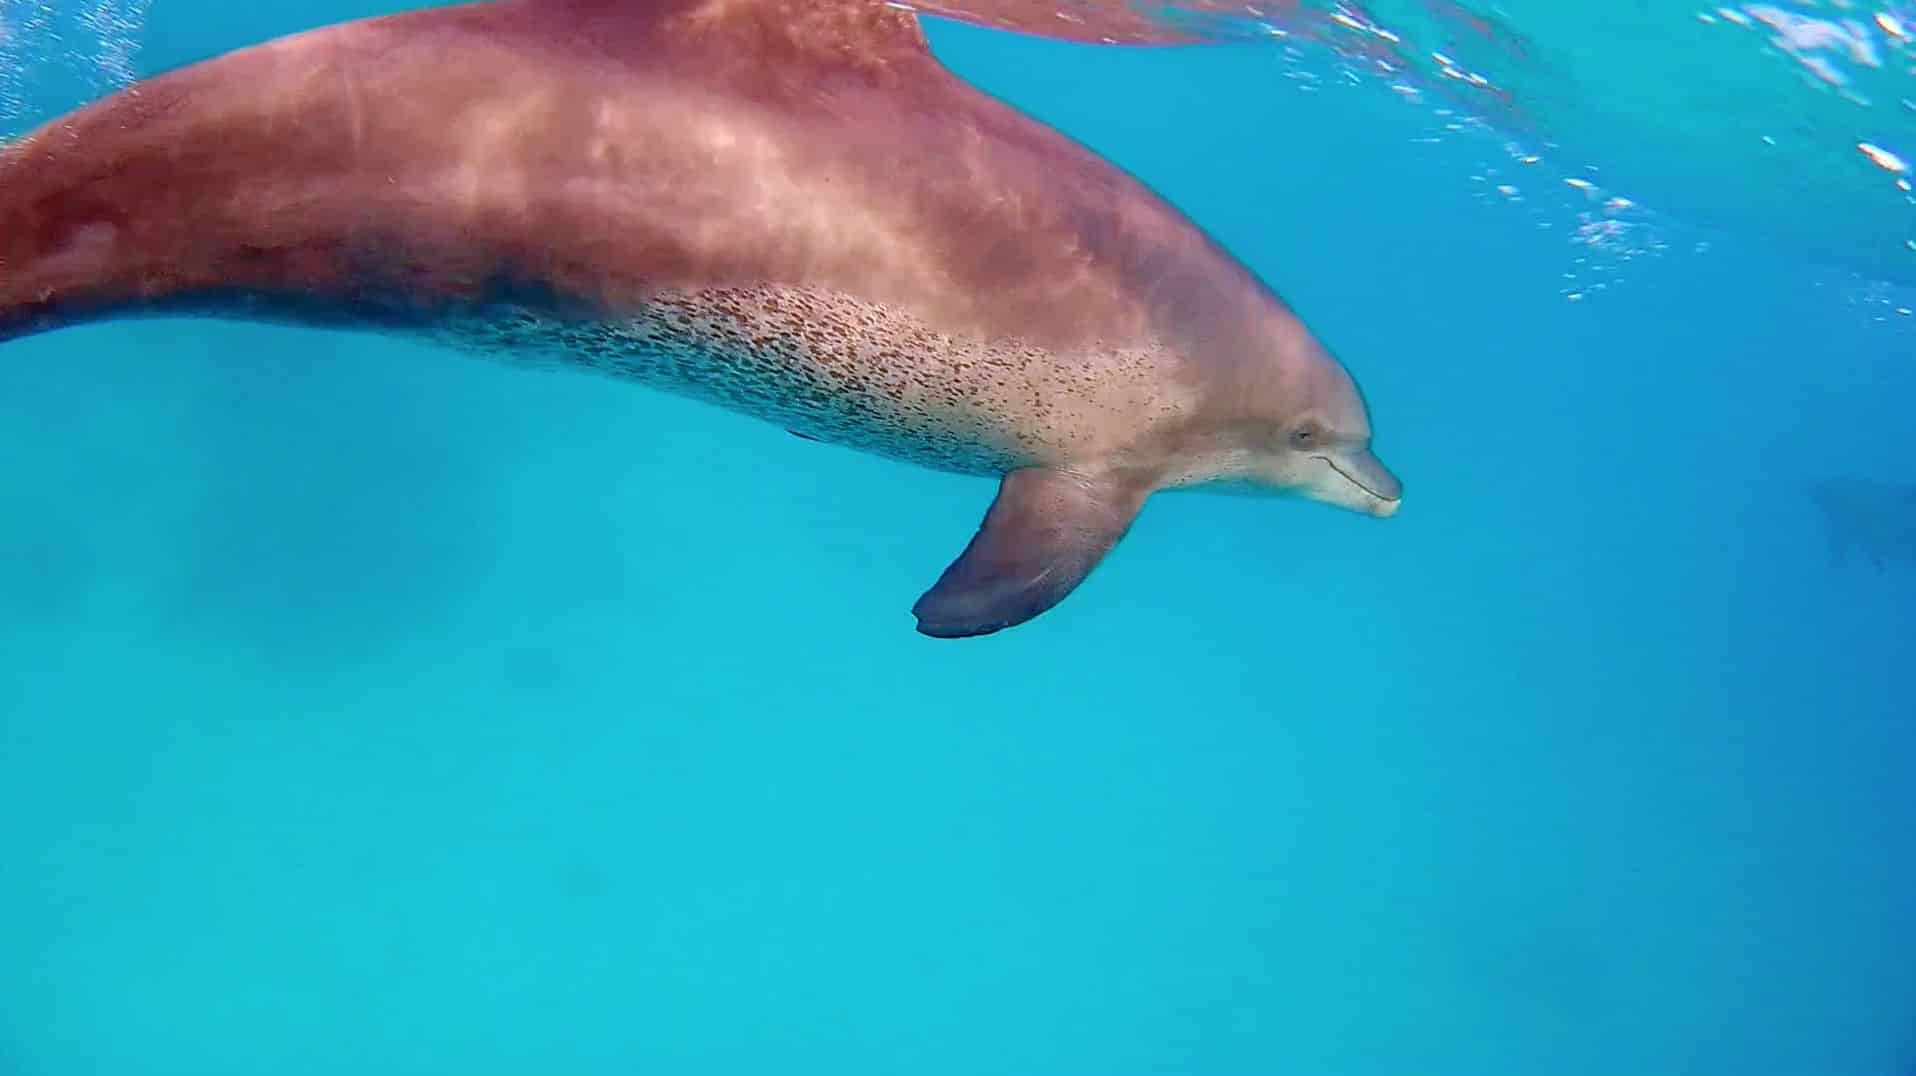 Zwemmen met dolfijnen in de Rode Zee is een onvergetelijke ervaring - zolang het op een diervriendelijke manier plaatsvindt. Foto: Sascha Tegtmeyer